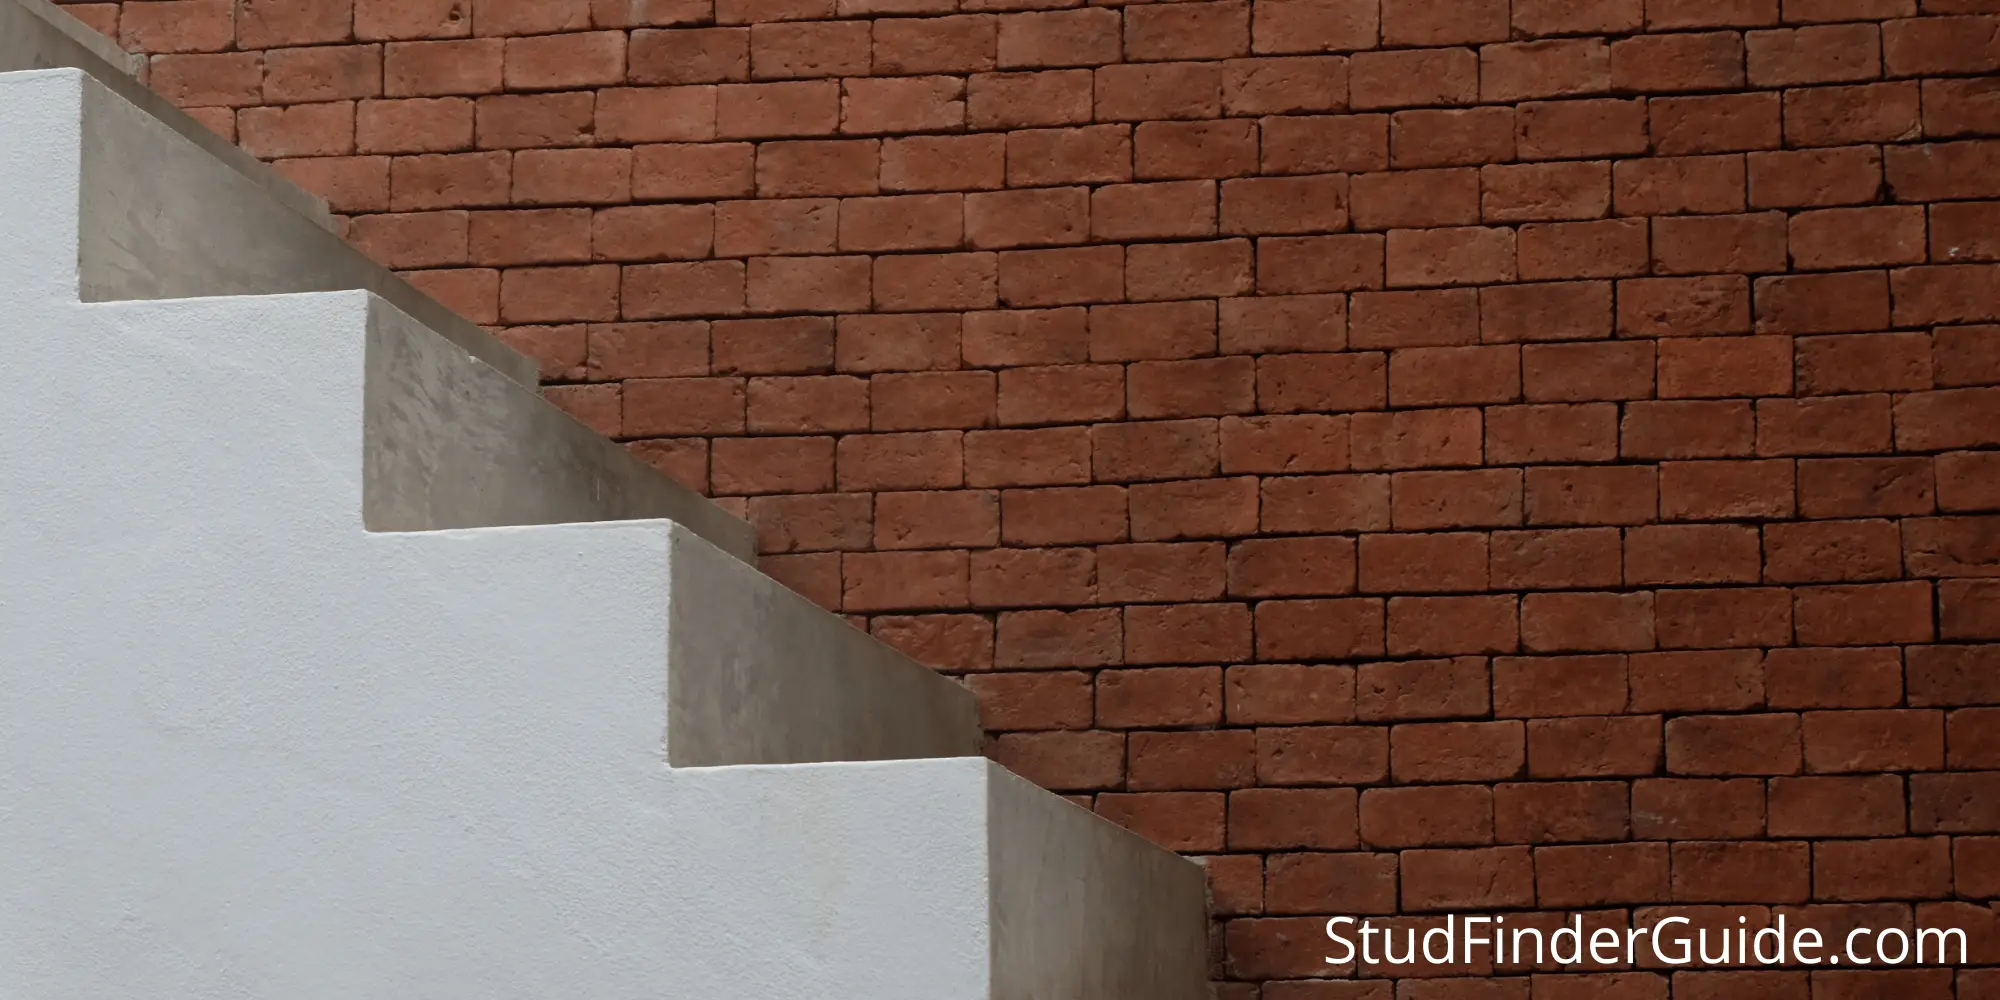 Do Stud Finders Work Through Brick?